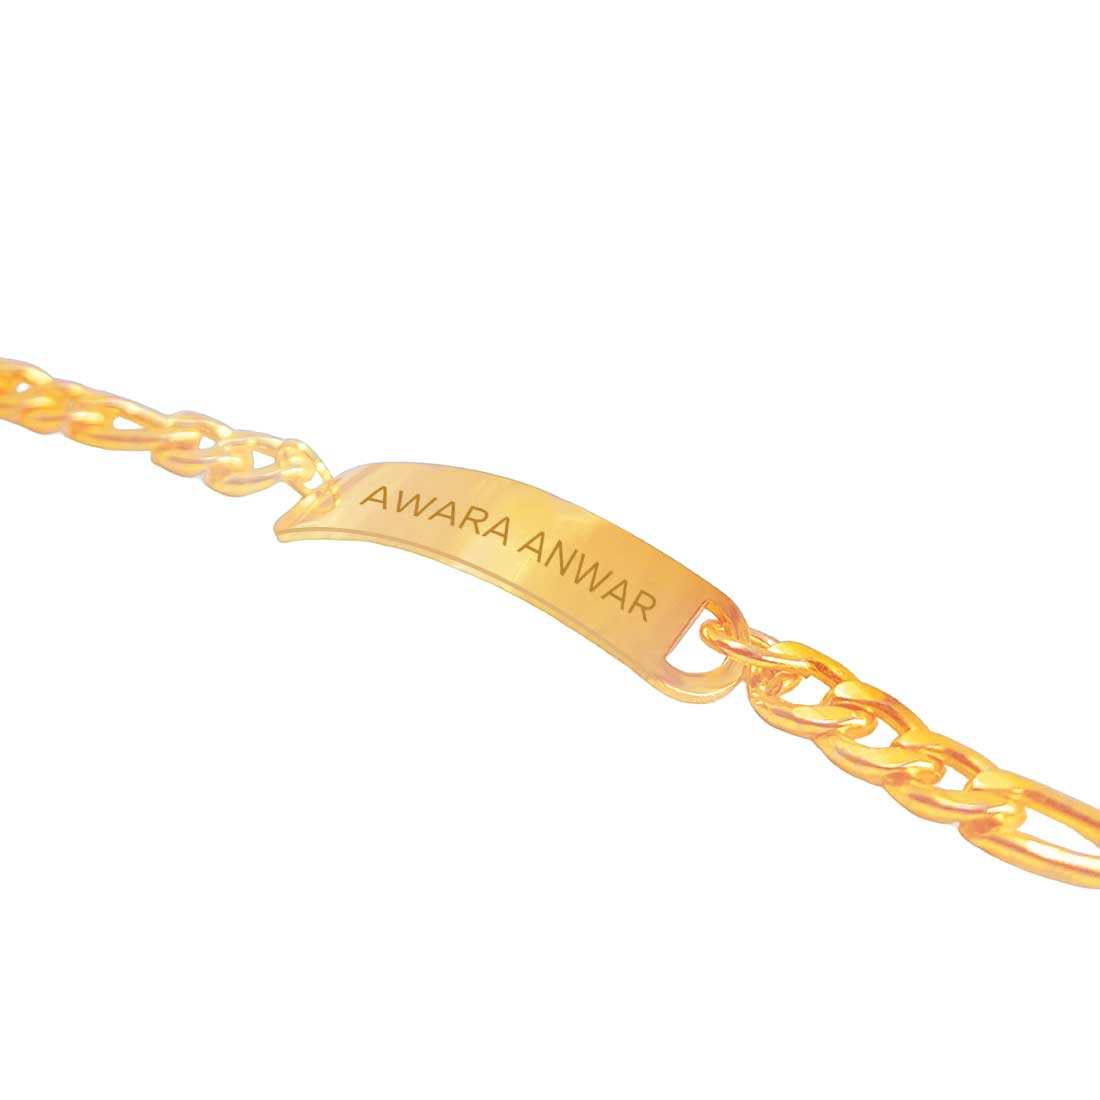 Buy/Send Rose Gold Plated Engraved Bracelet For Women Online- FNP